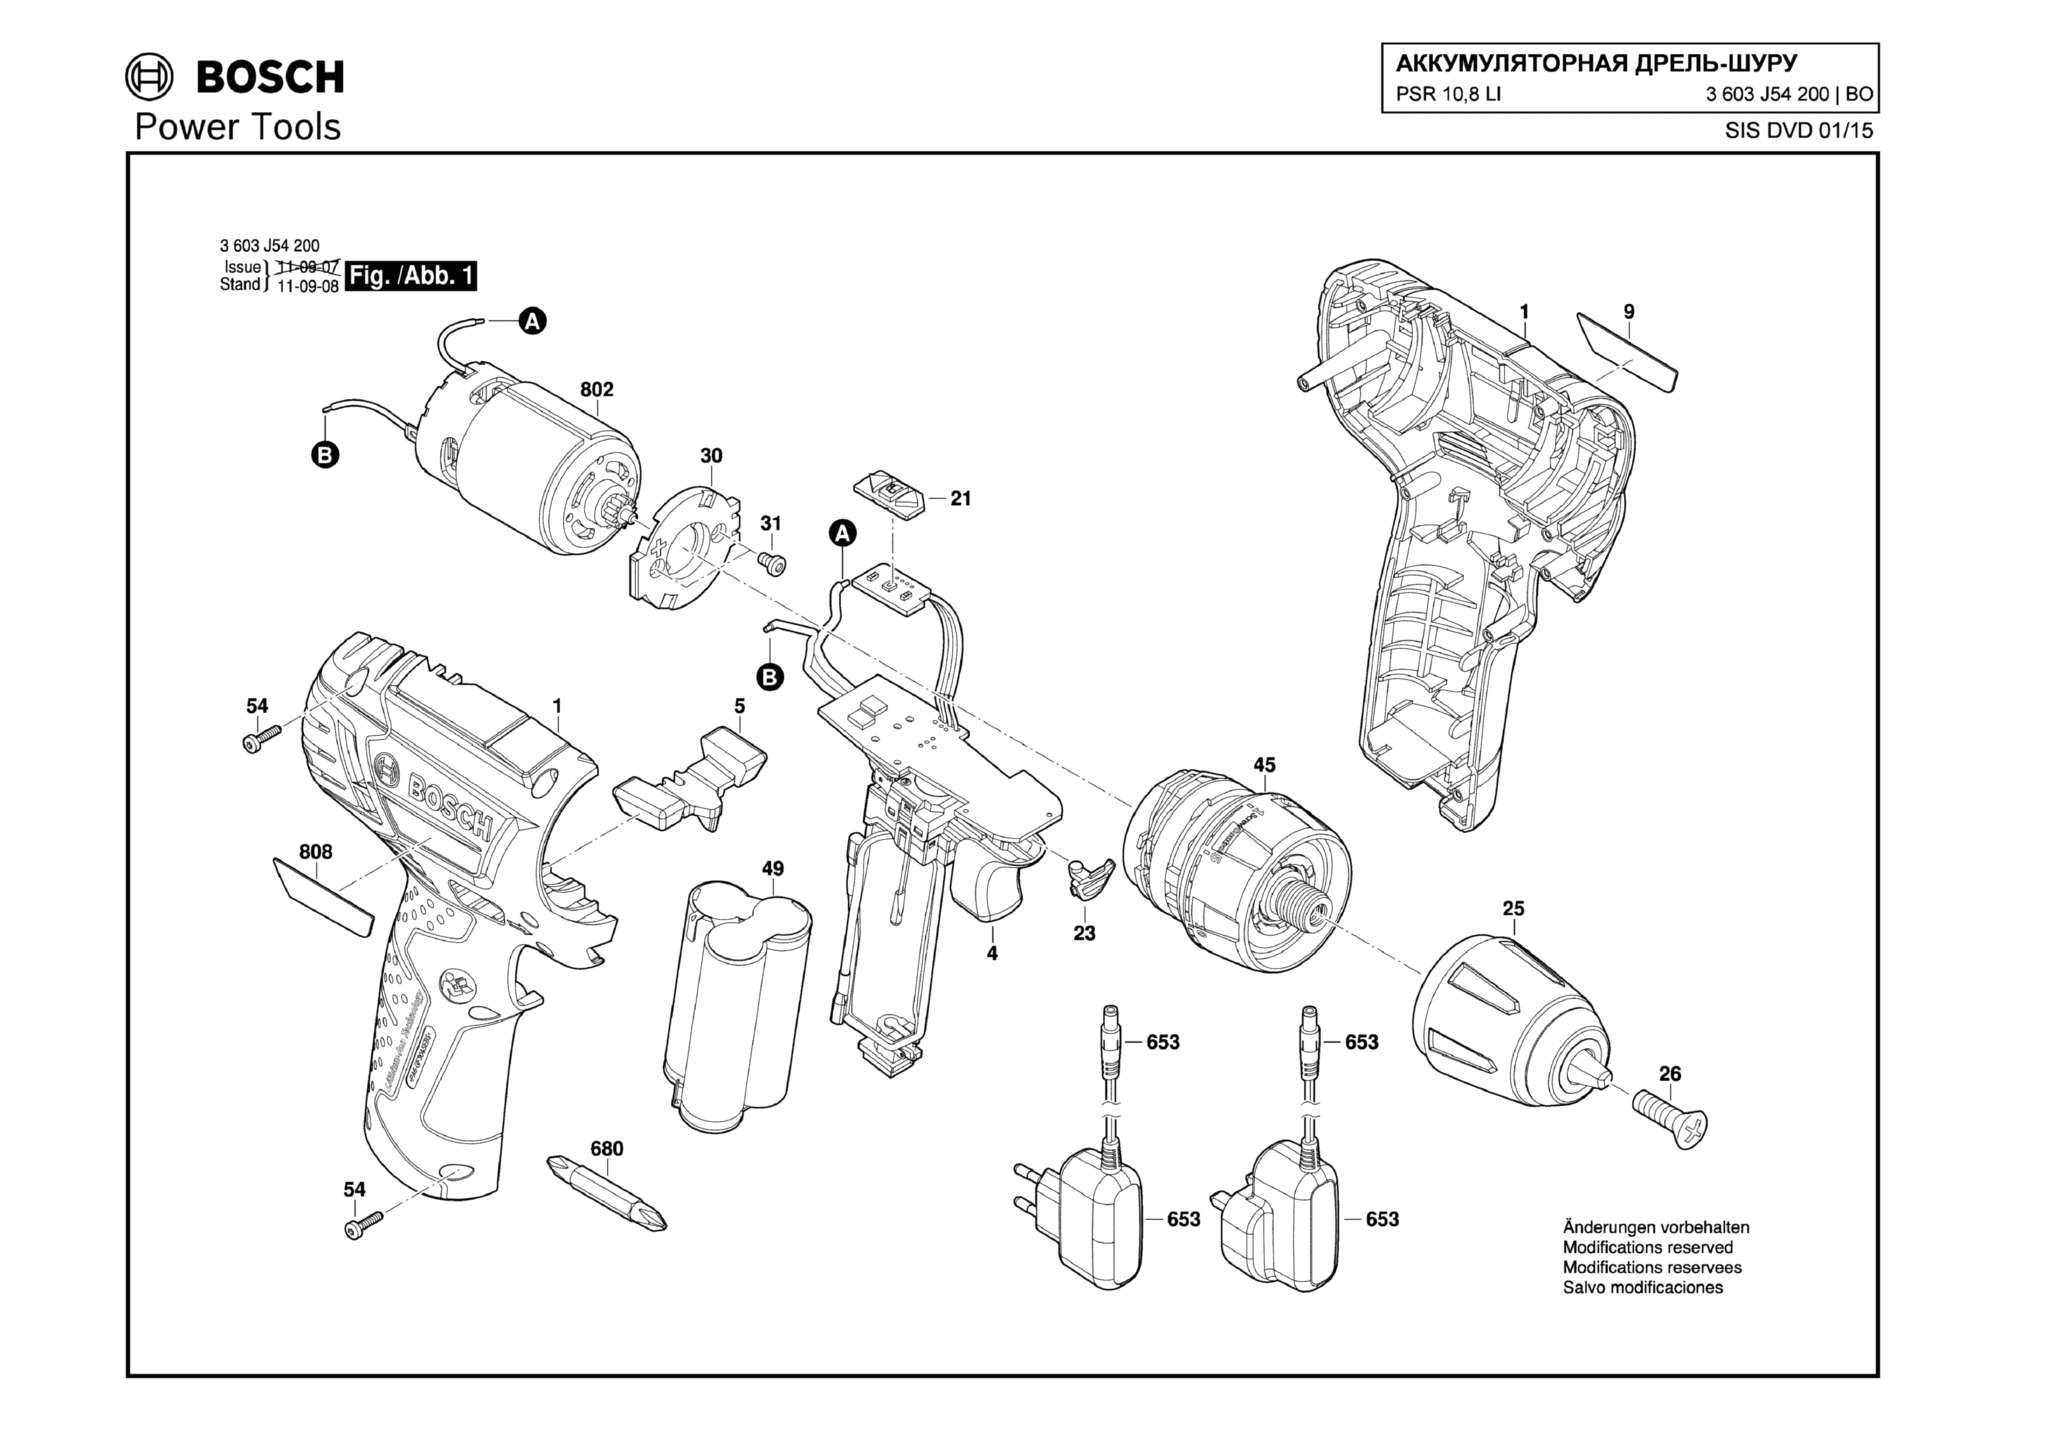 Запчасти, схема и деталировка Bosch PSR 10,8 LI (ТИП 3603J54200)